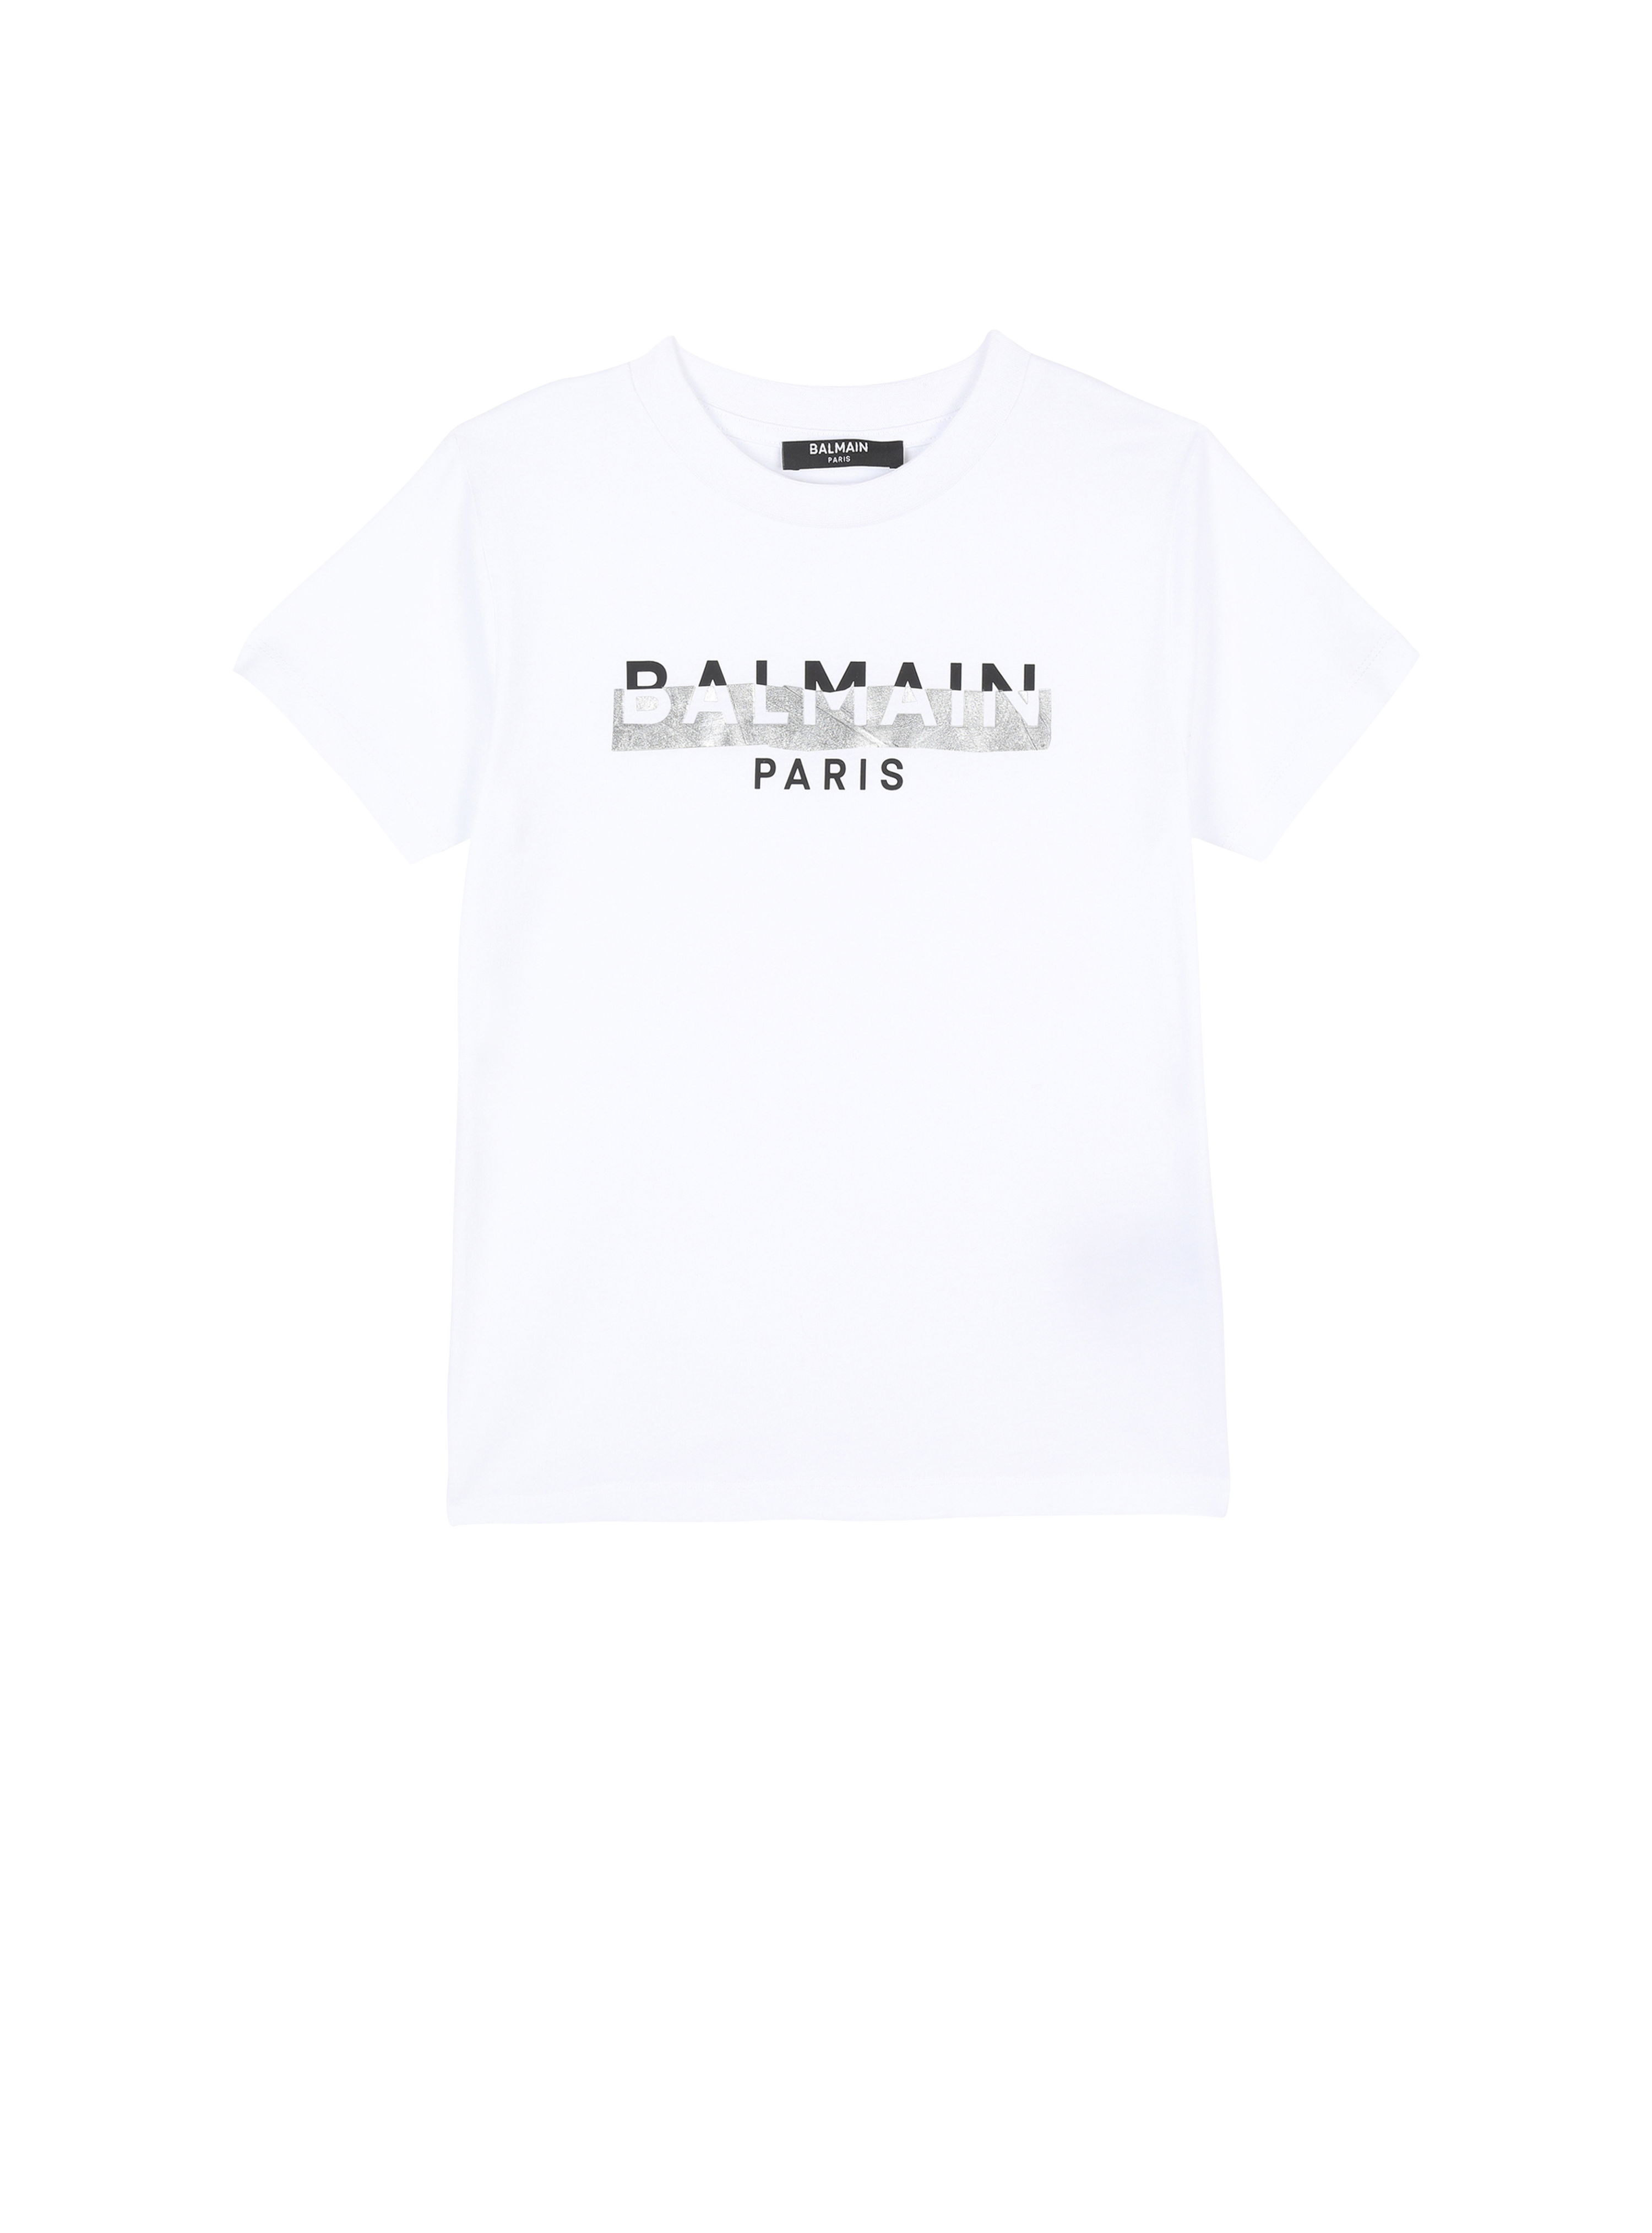 バルマンロゴ入りのコットン製Tシャツ, 白